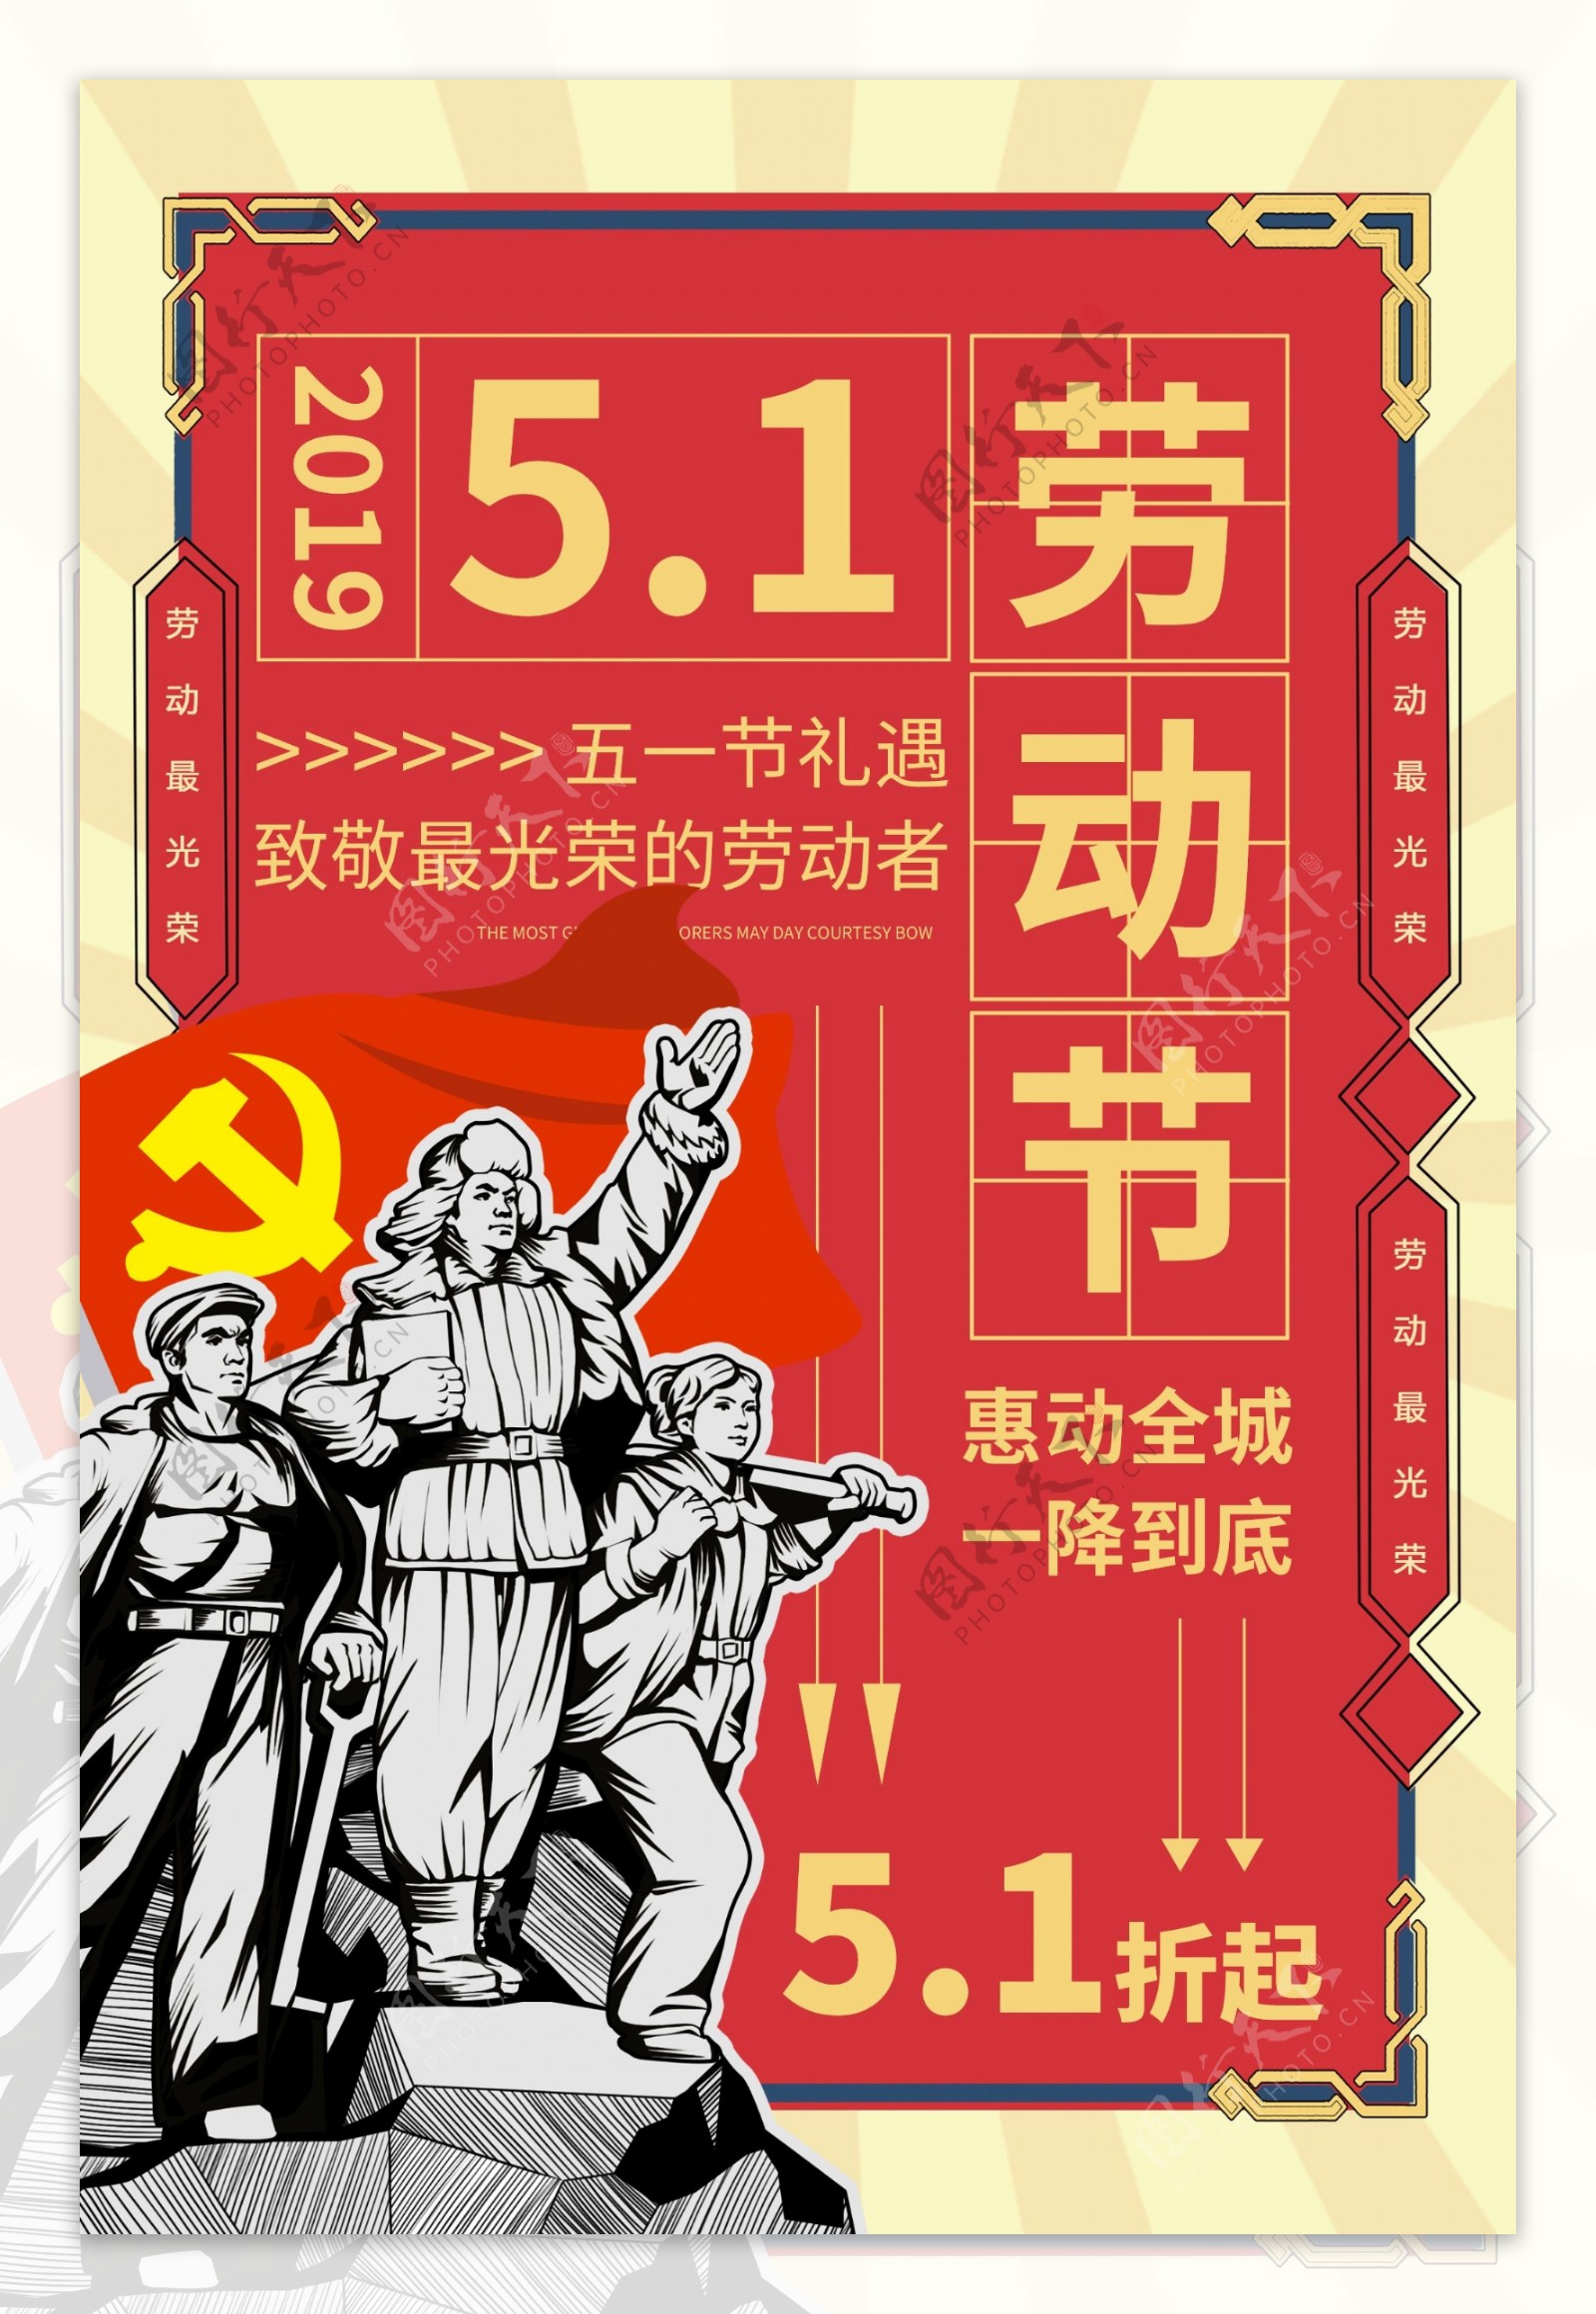 5.1劳动节促销海报